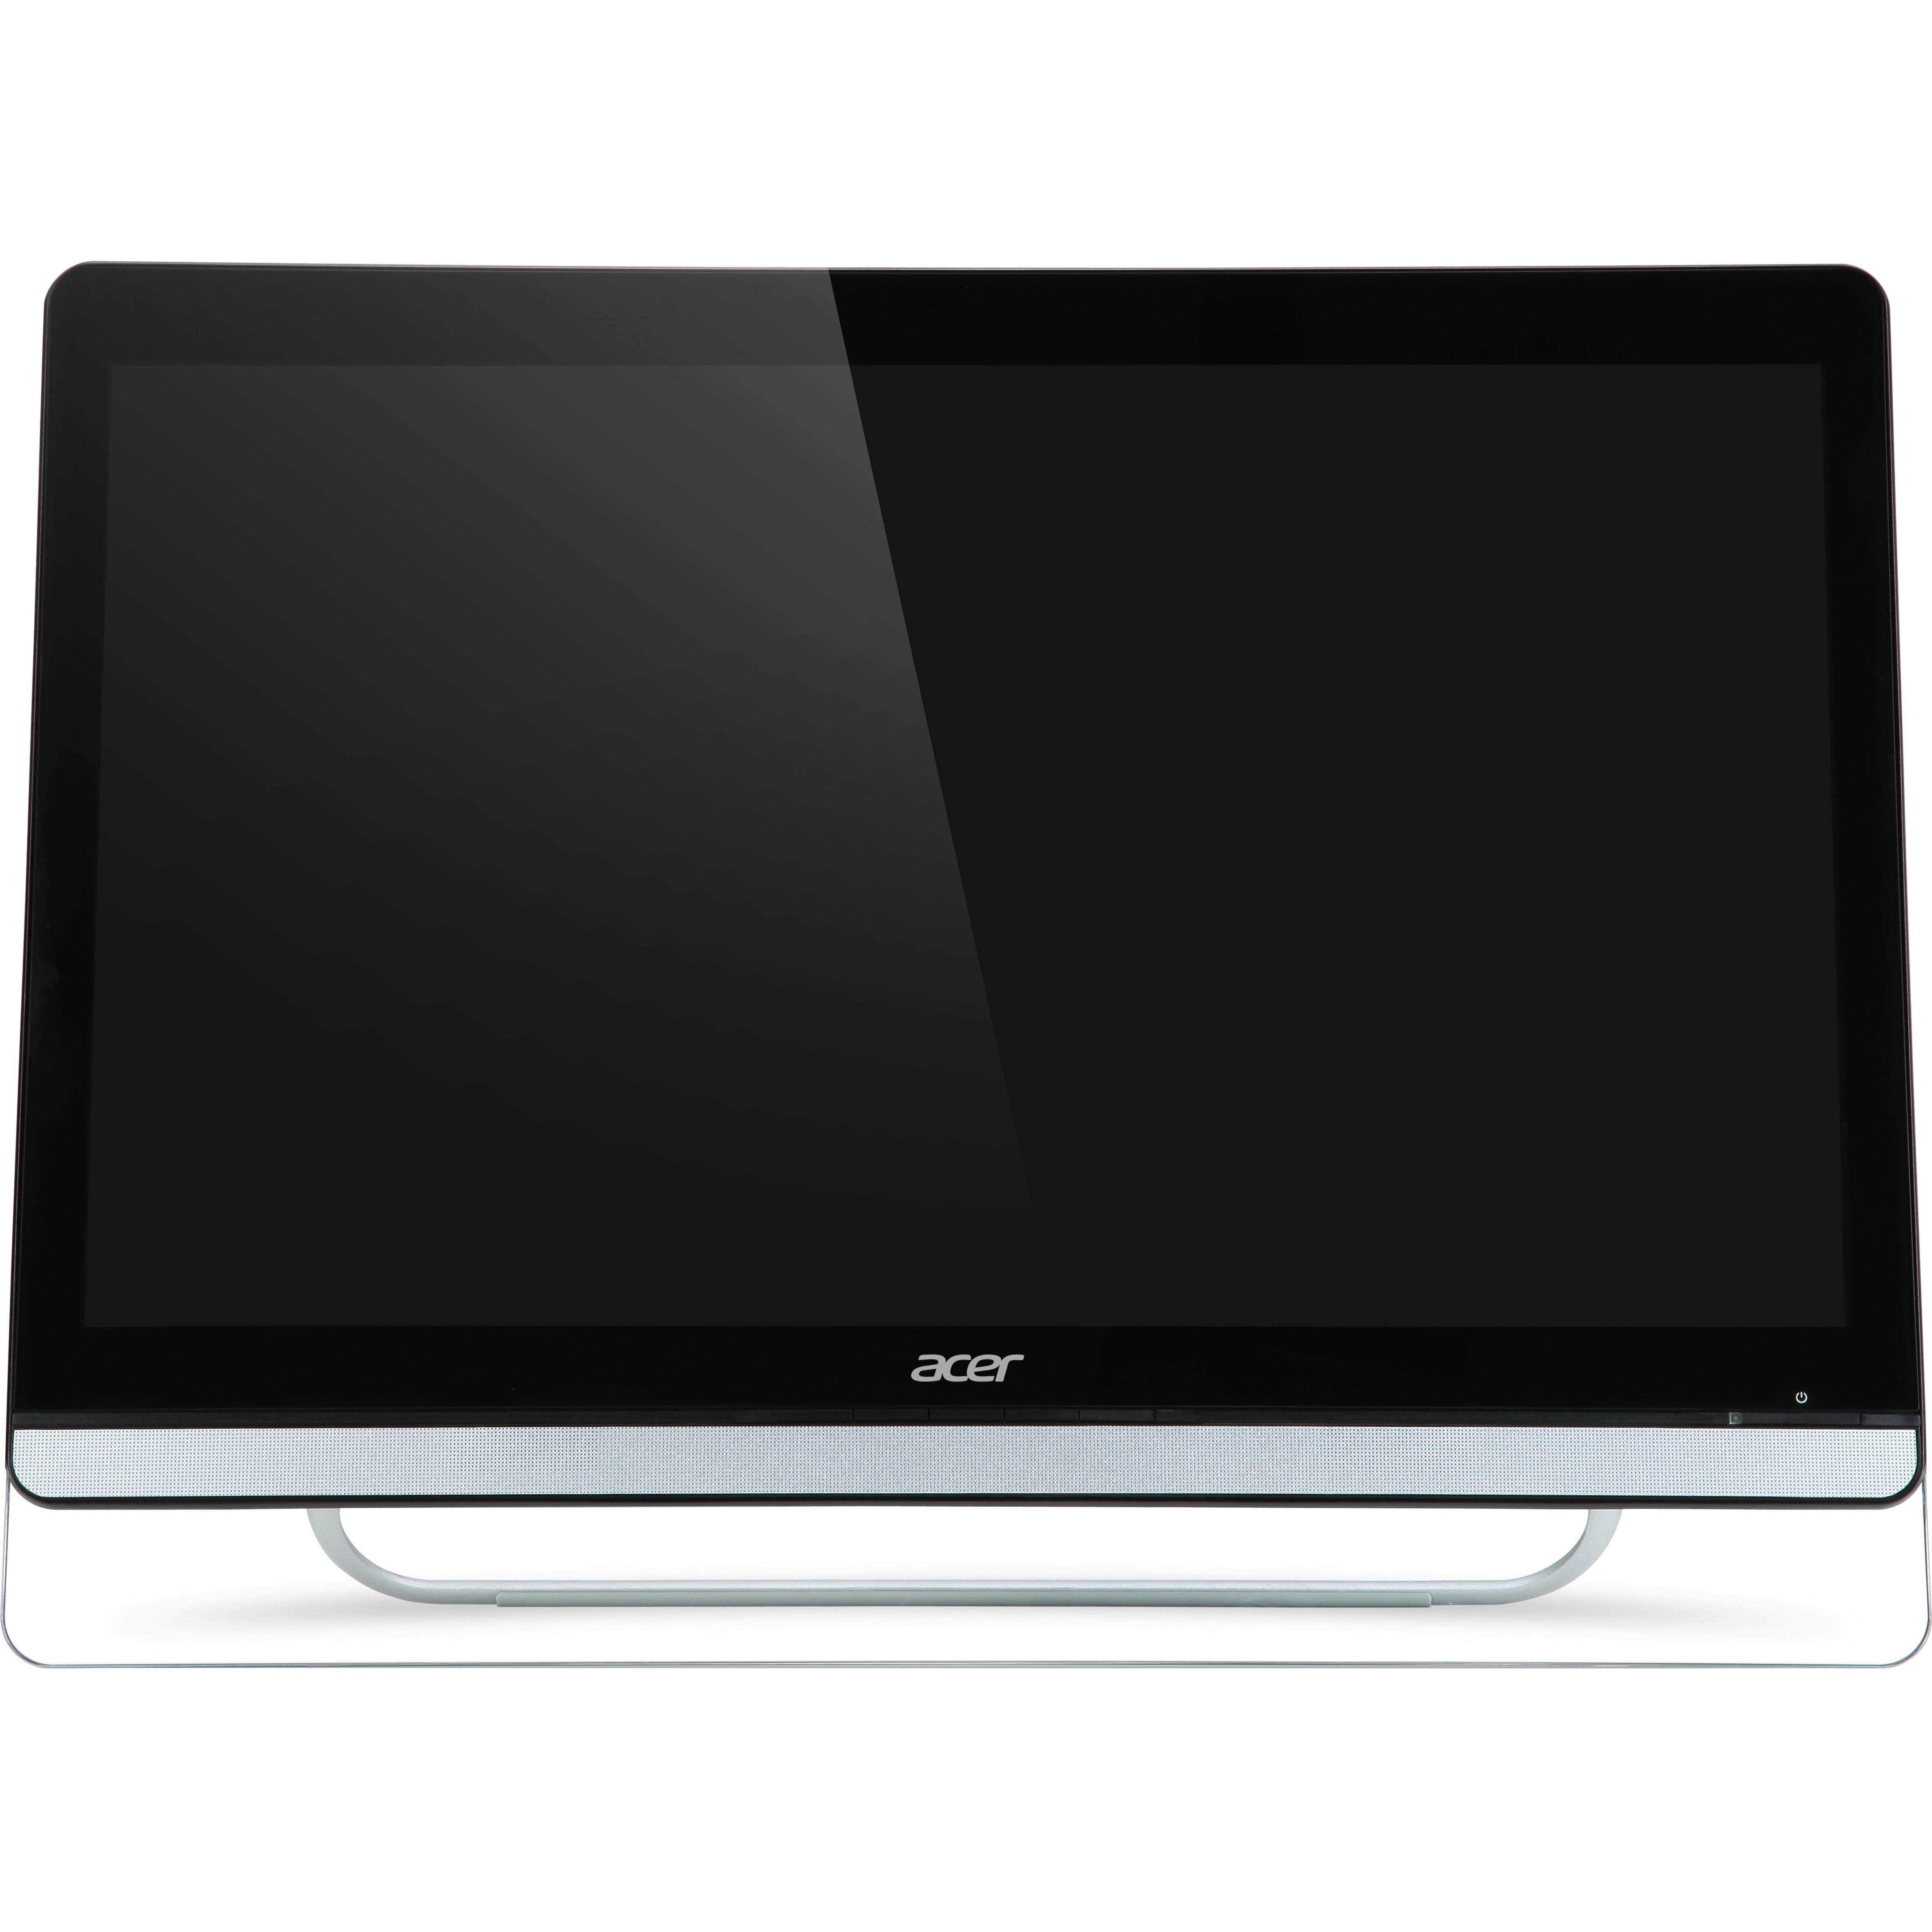 Acer UT220HQL - LED monitor - 21.5